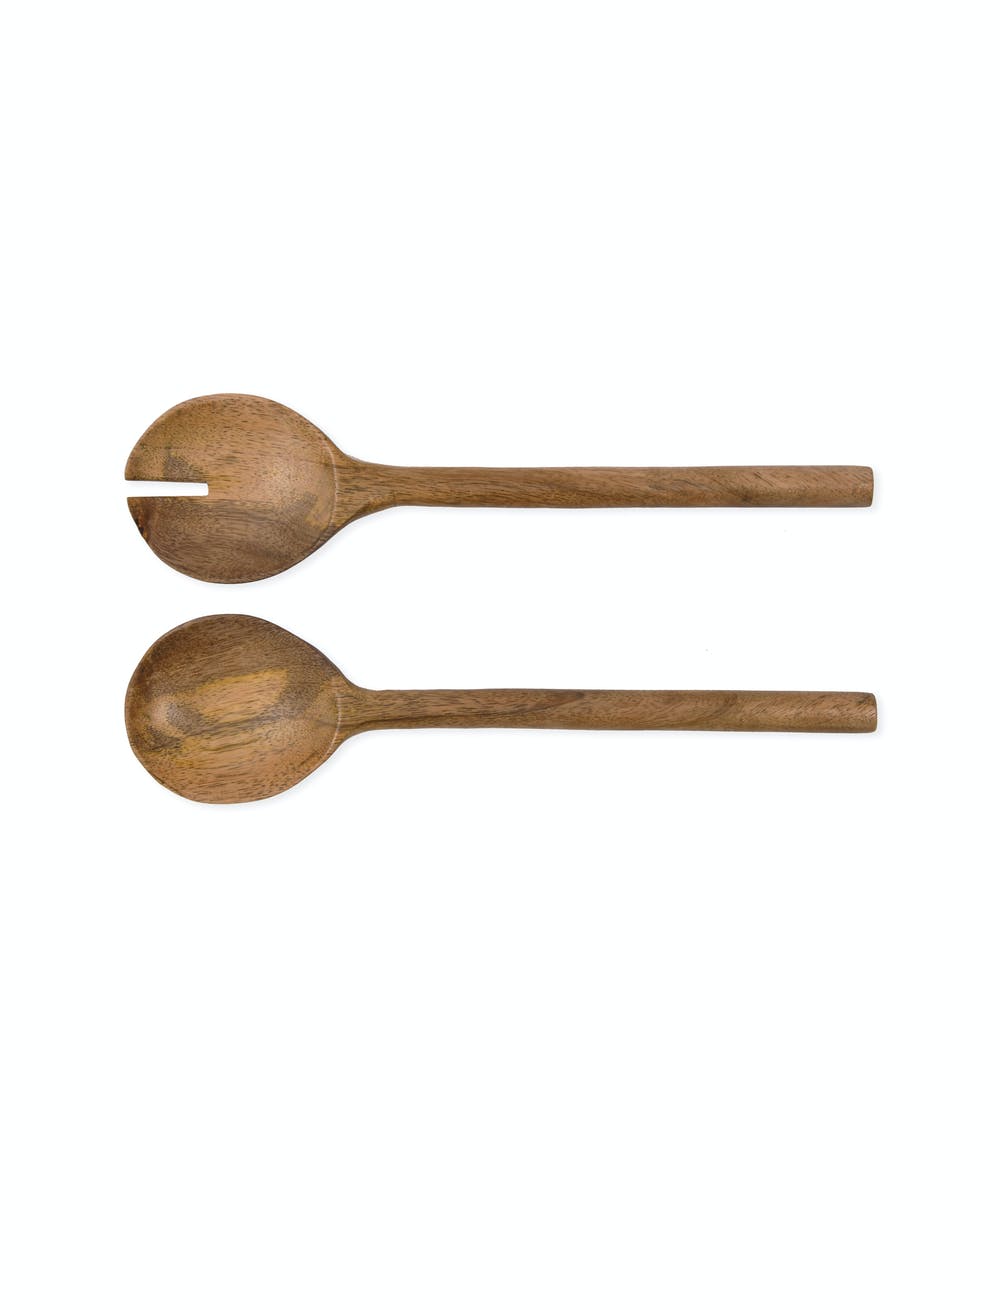 
                  
                    Midford Mango Wood Serving Spoons
                  
                